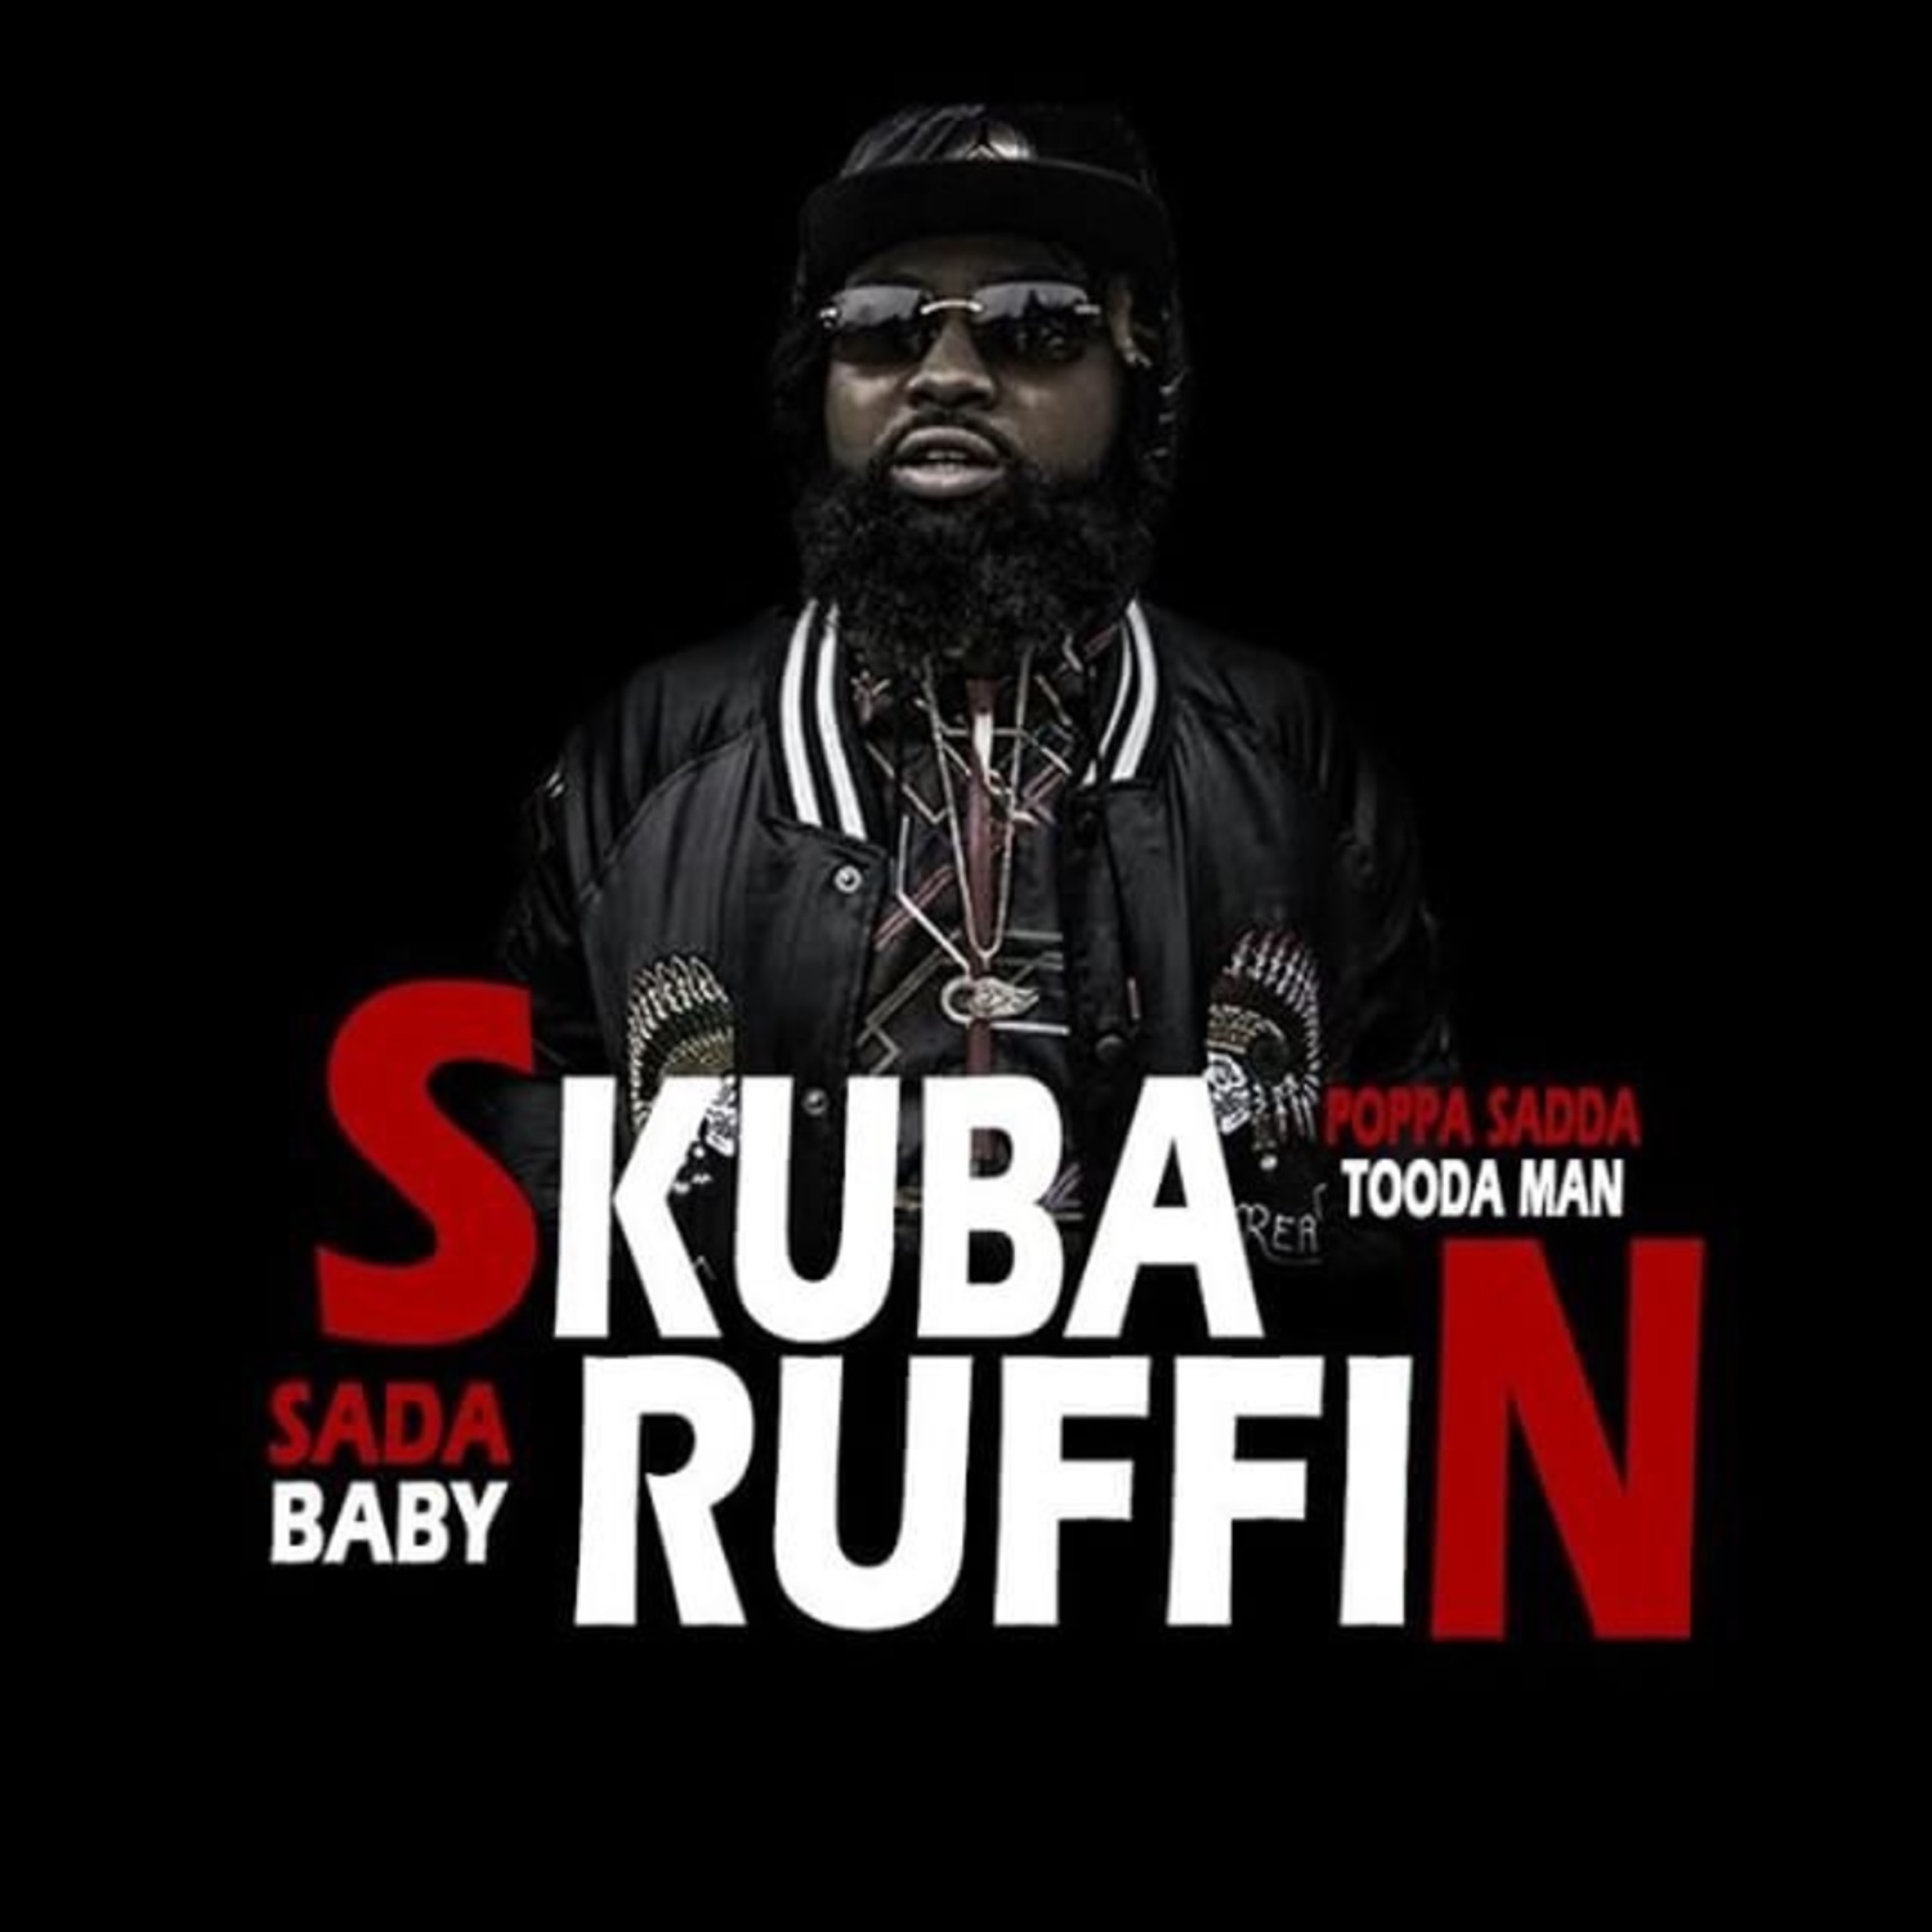 #SkubaRuffin (feat Poppa Sadda & Tooda Man)